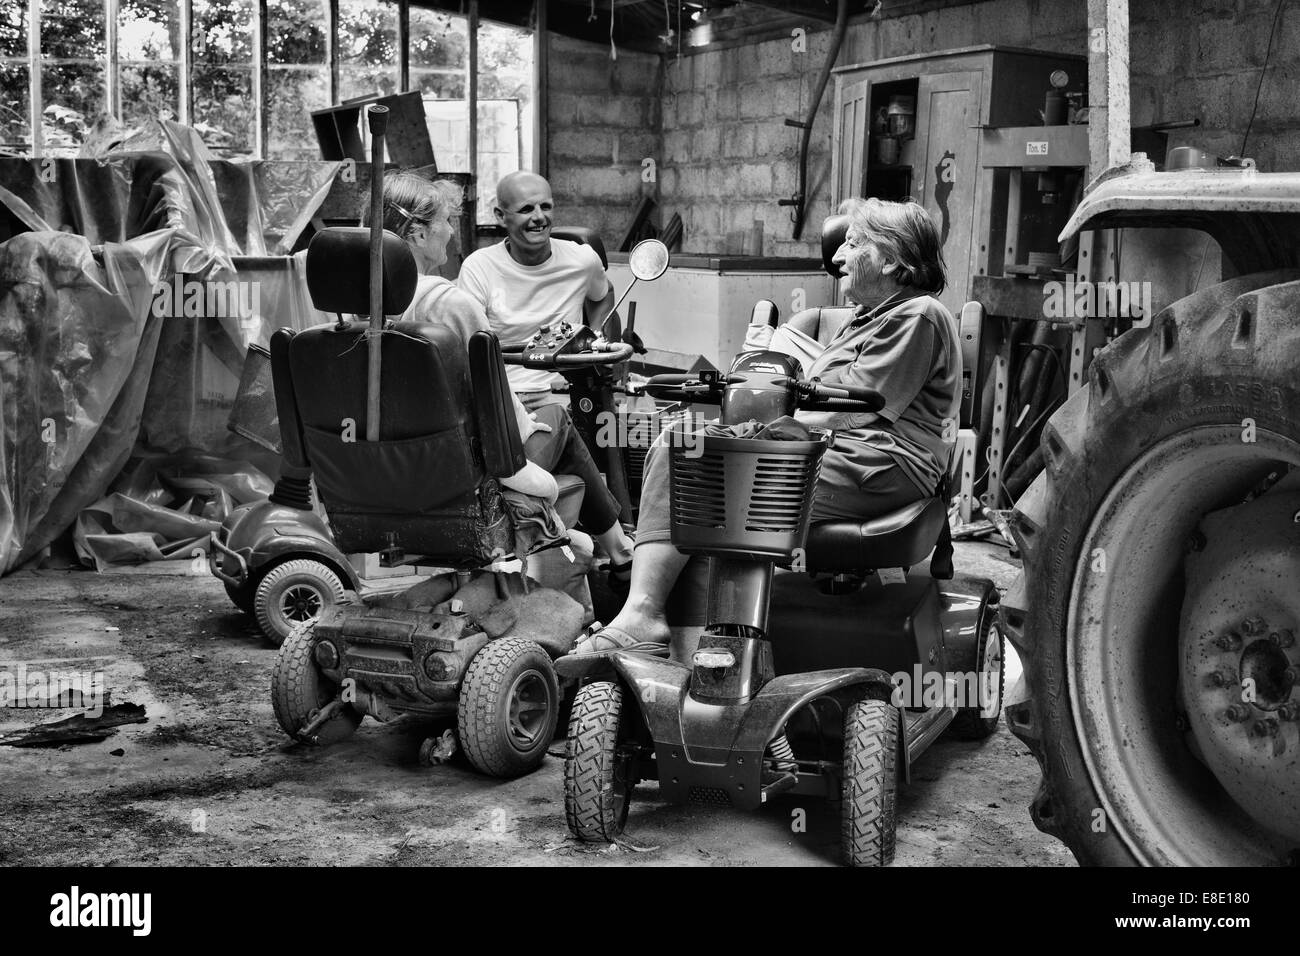 drei Leute sitzen auf den Chat in einem alten Traktor Schuppen Scooter Stockfoto